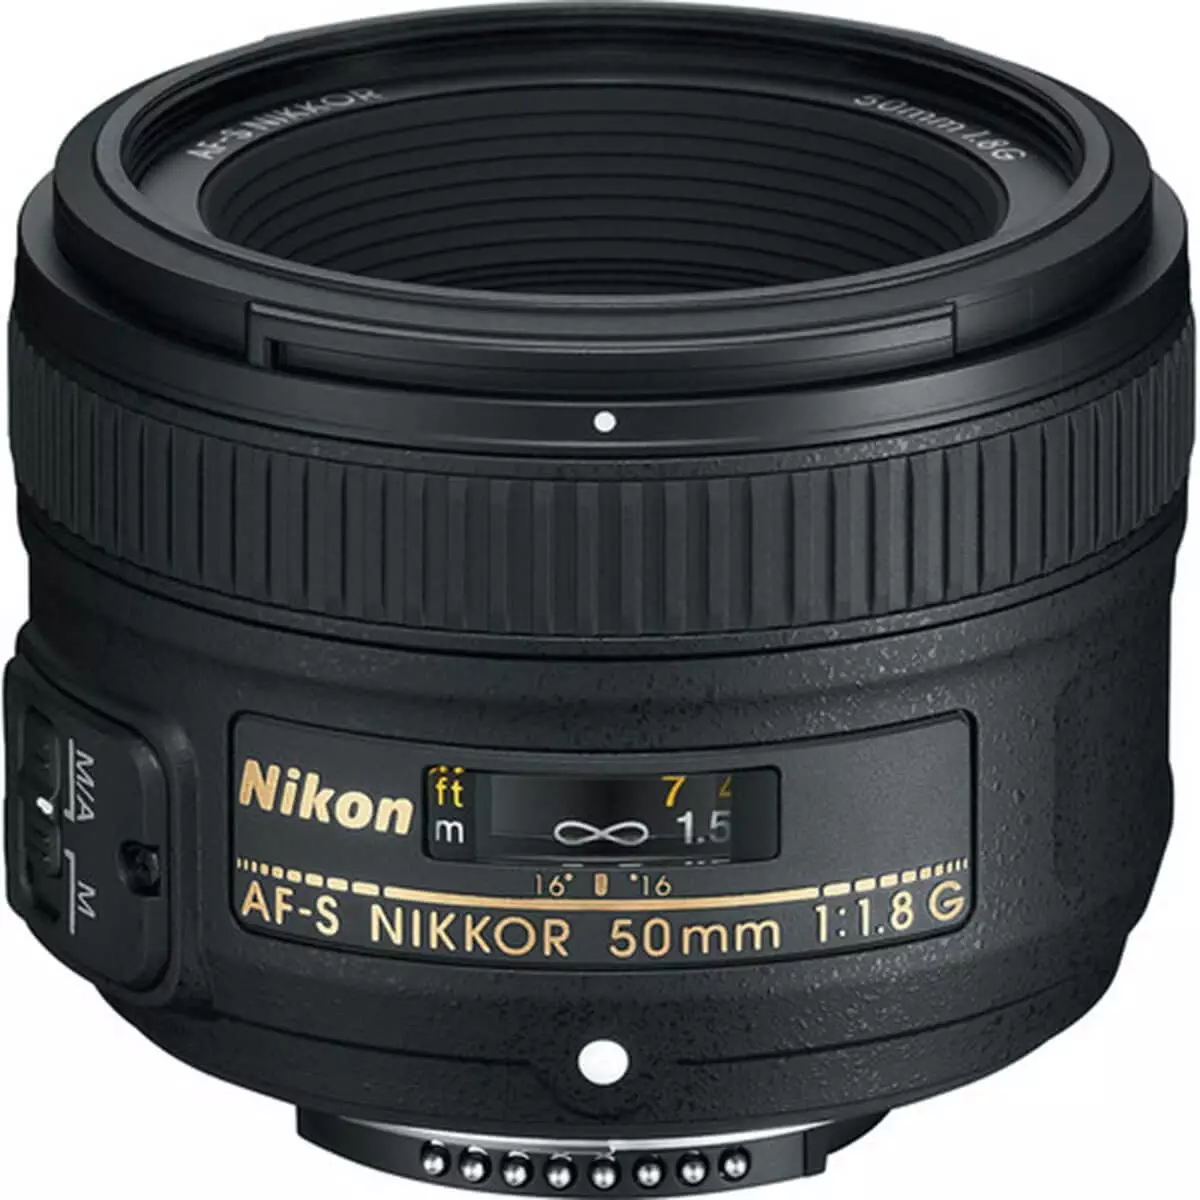 Nikon Lens AF-S 50mm F1.8 G 1